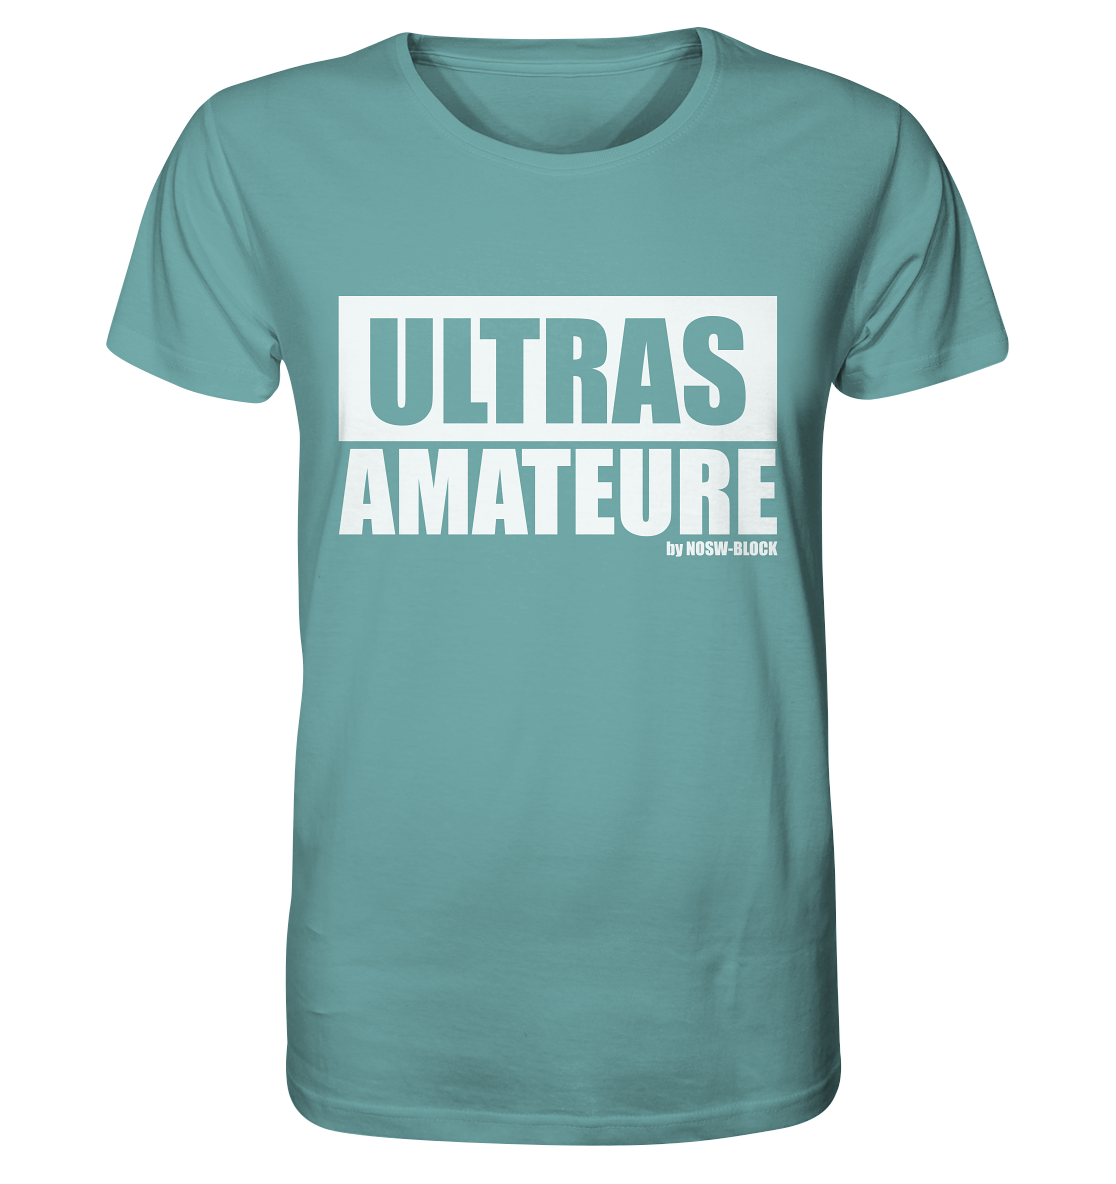 N.O.S.W. BLOCK Ultras Shirt "ULTRAS AMATEURE" Männer Organic T-Shirt citadel blue